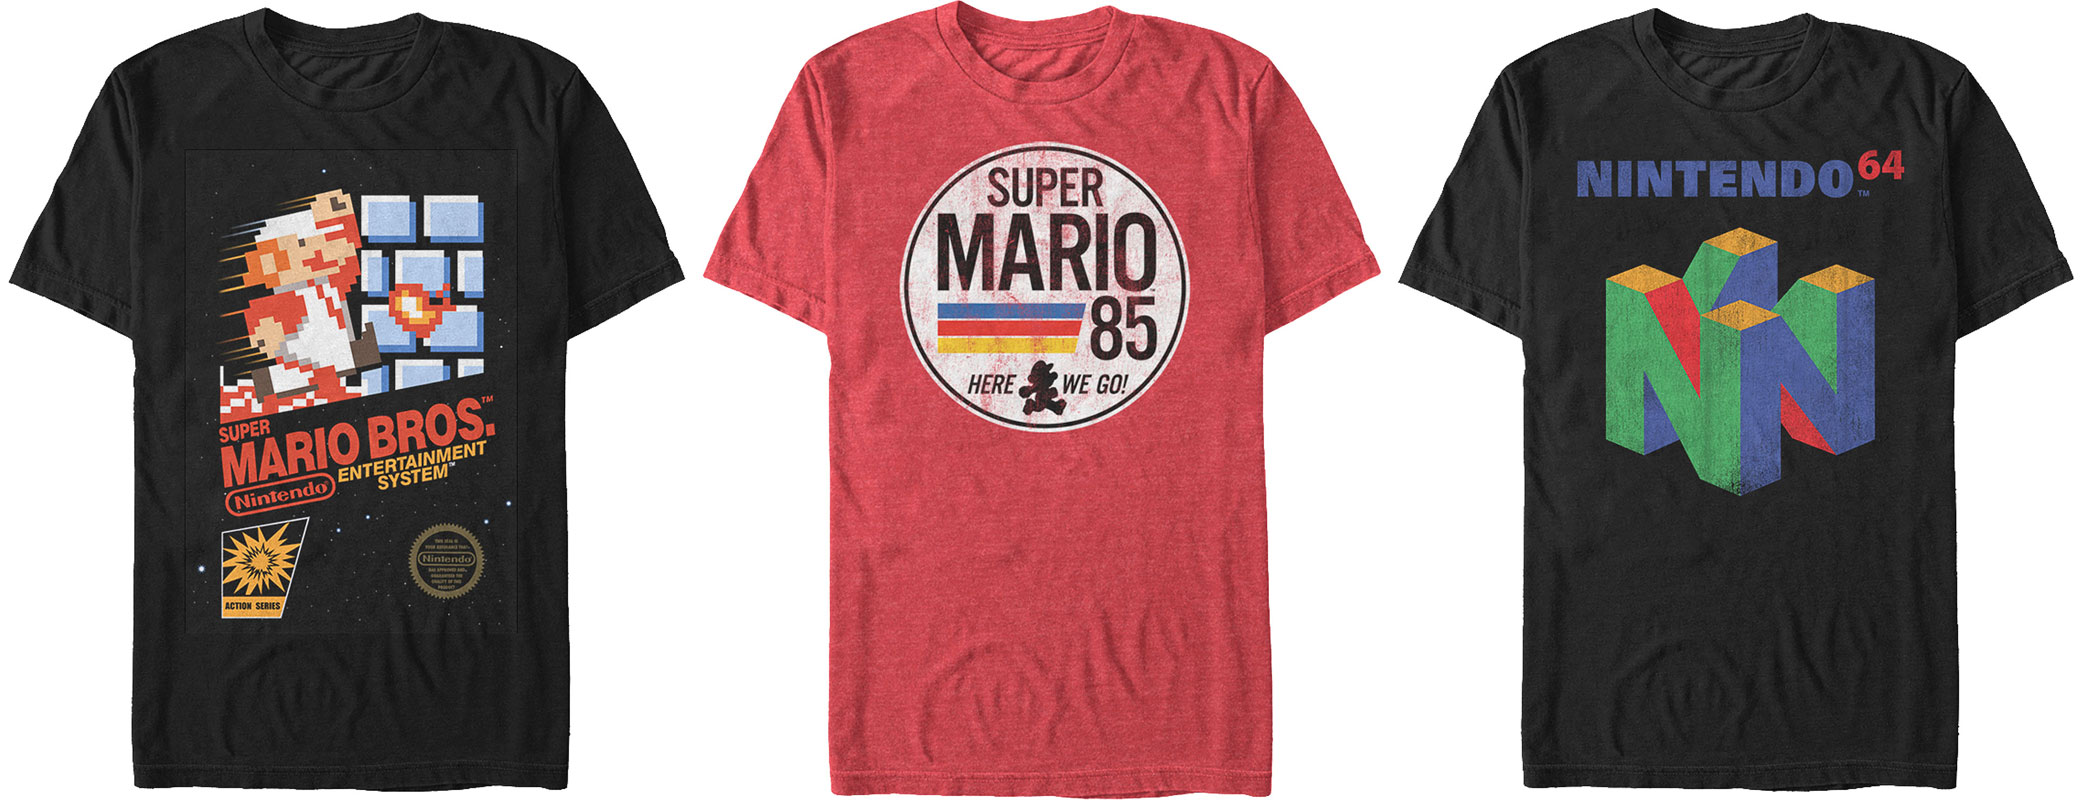 super-mario-retro-shirts-for-puma-super-mario-shoes